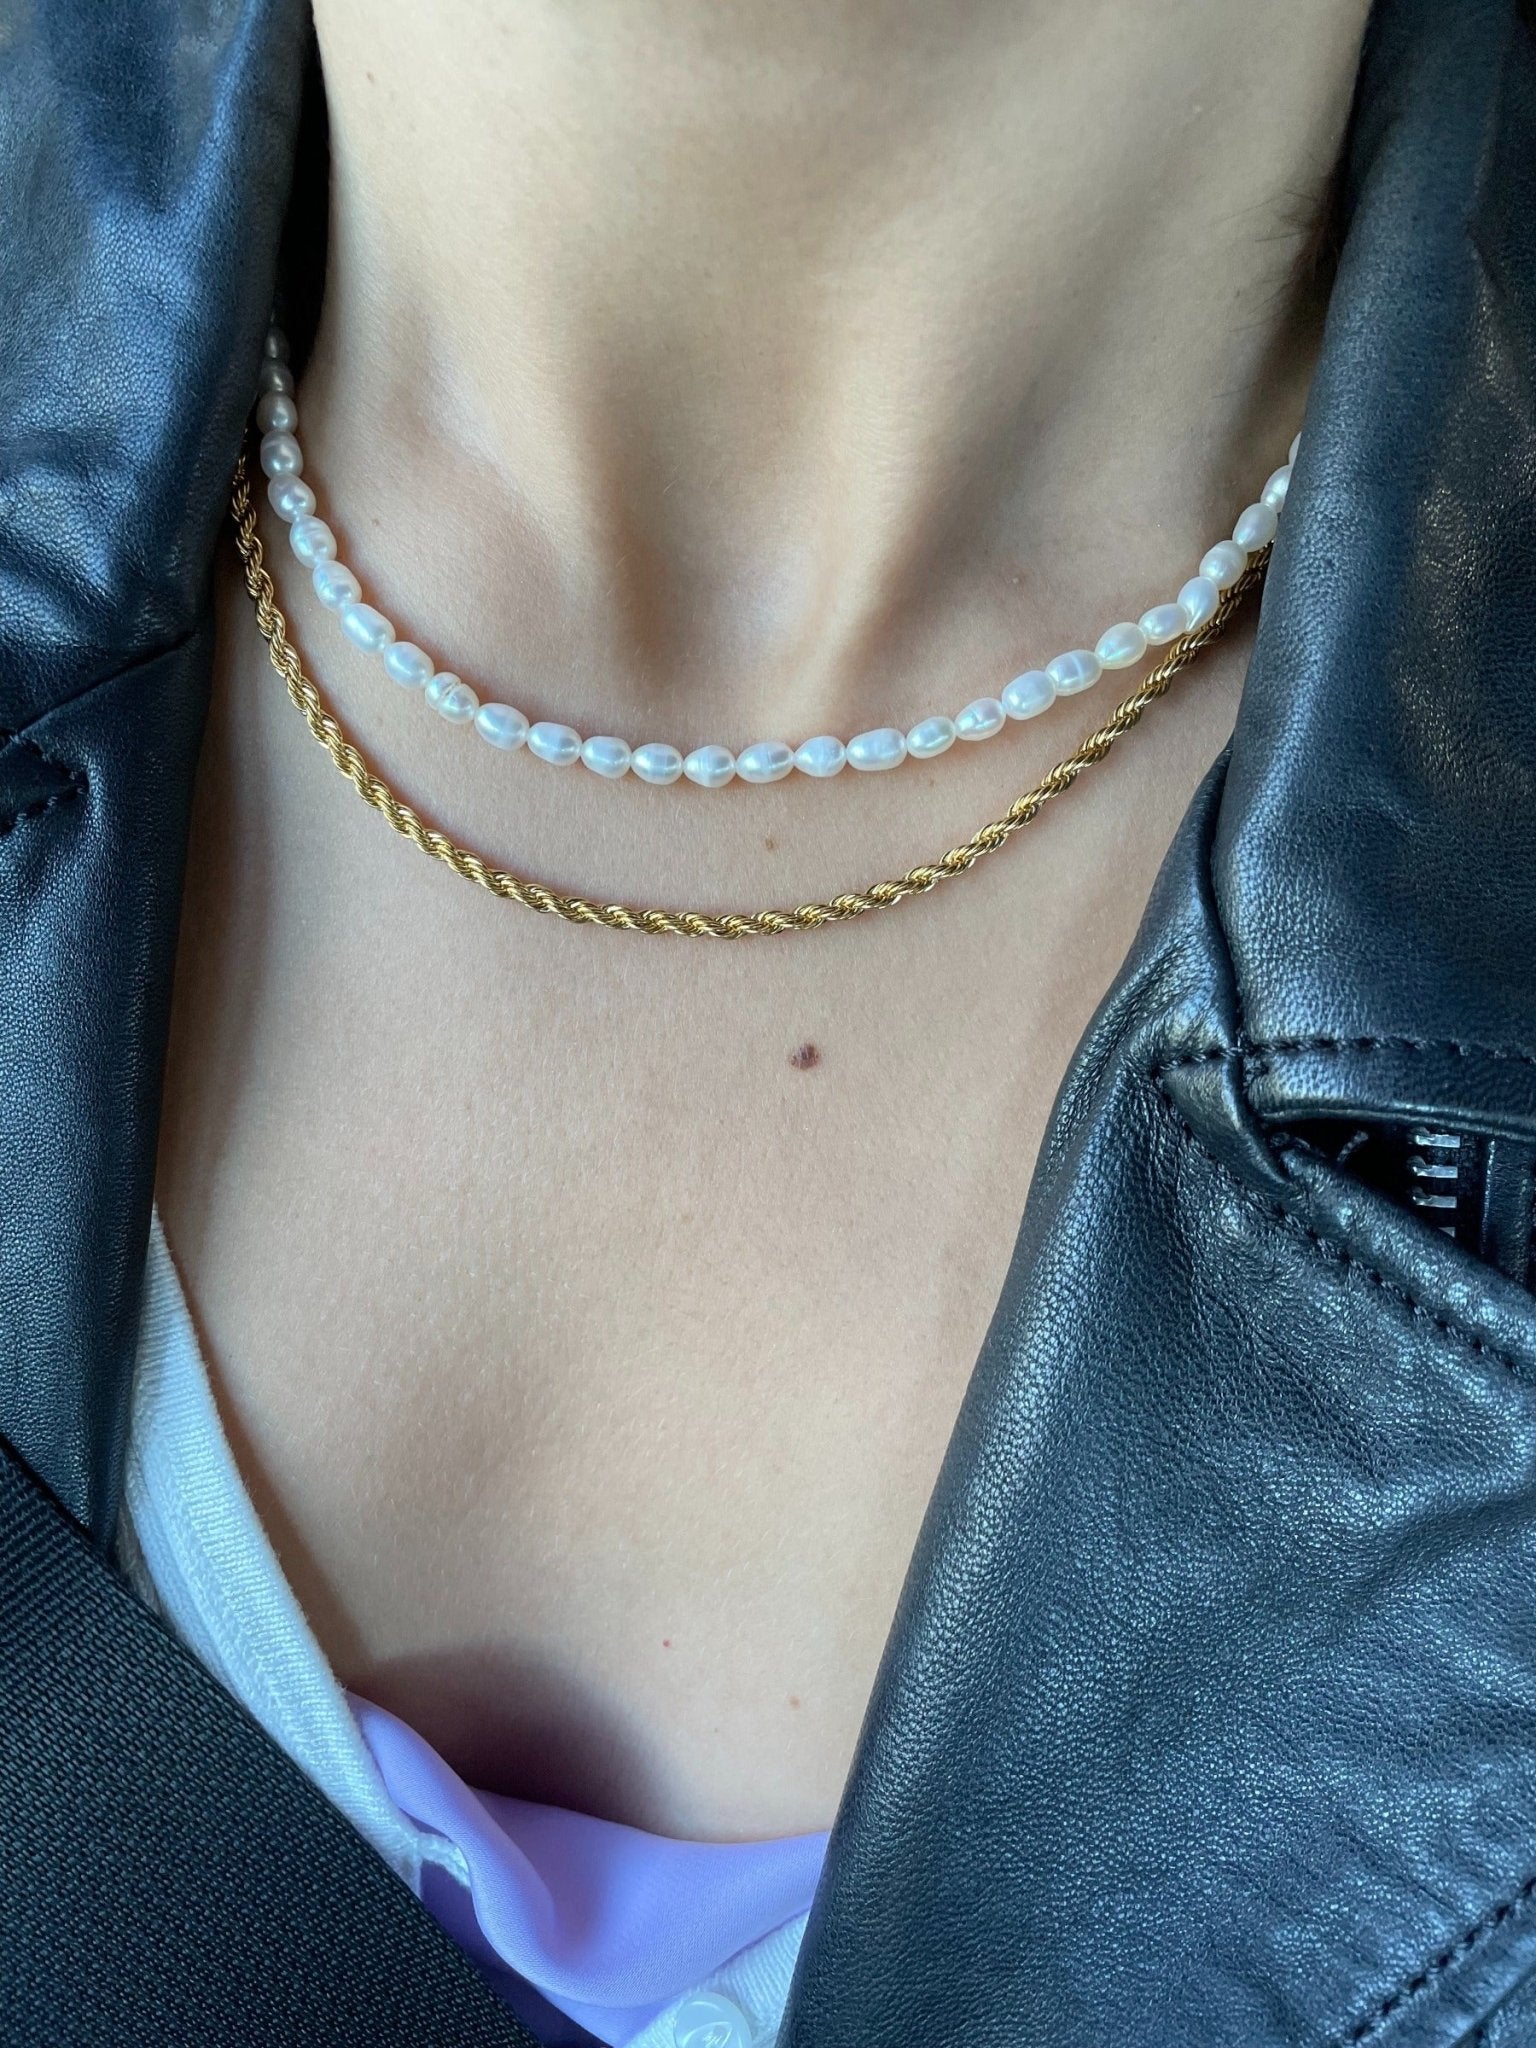 Sierra Rope Gold Chain by Koréil Jewelry